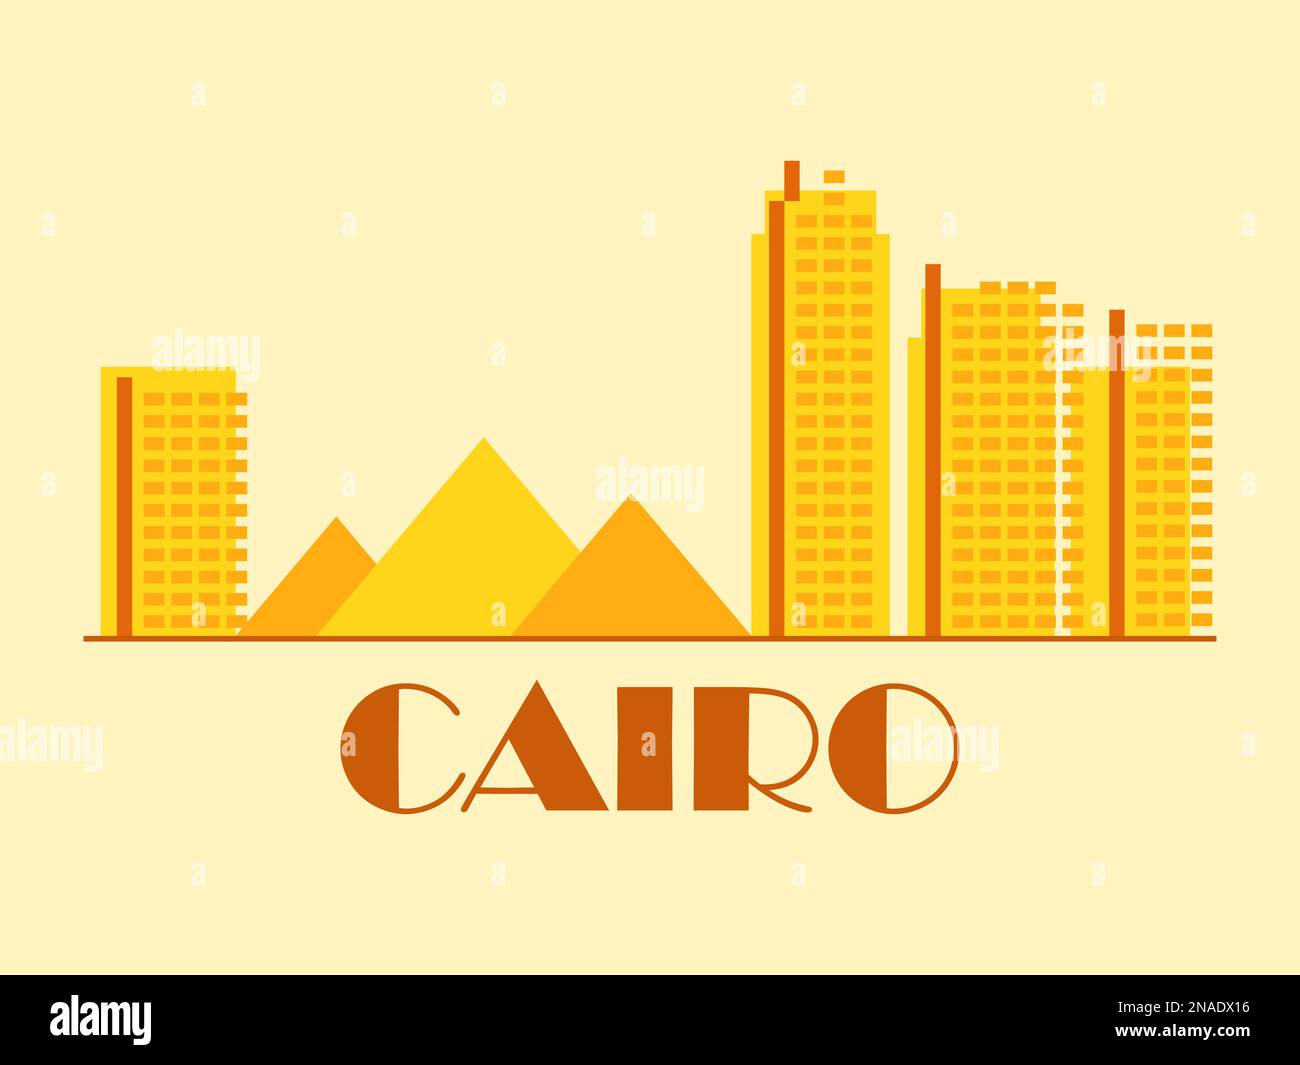 Cairo paesaggio in stile vintage. Bandiera retrò del Cairo con antiche piramidi egiziane e case in stile lineare. Design per stampa, poster e promo Illustrazione Vettoriale